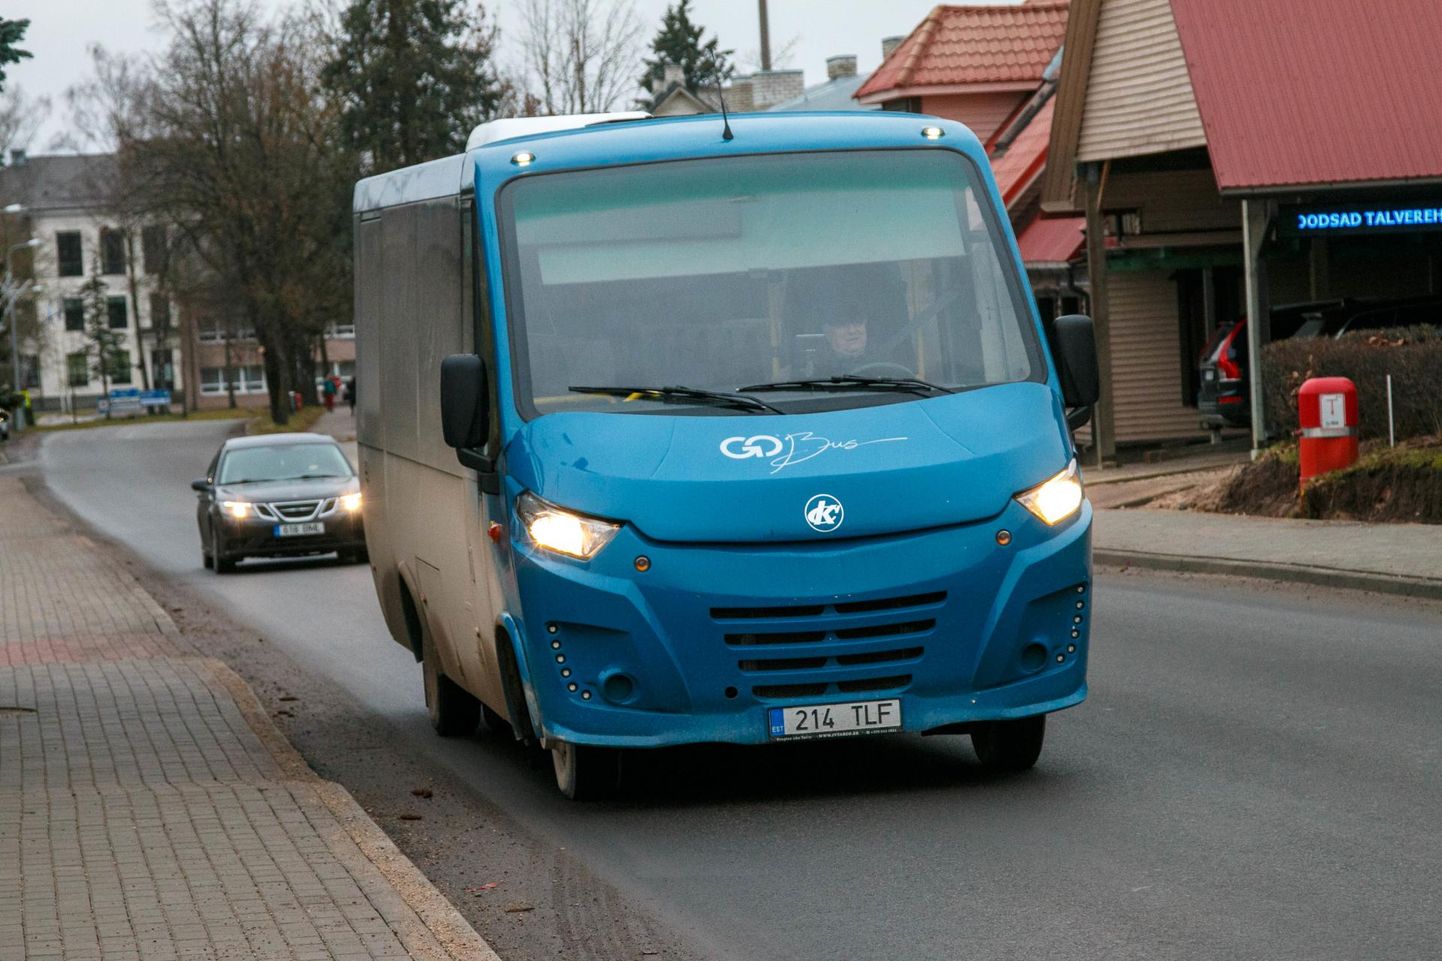 Водитель GoBus Ханно Пярксон развернул автобус и повез нуждающегося в медицинской помощи пассажира в больницу.